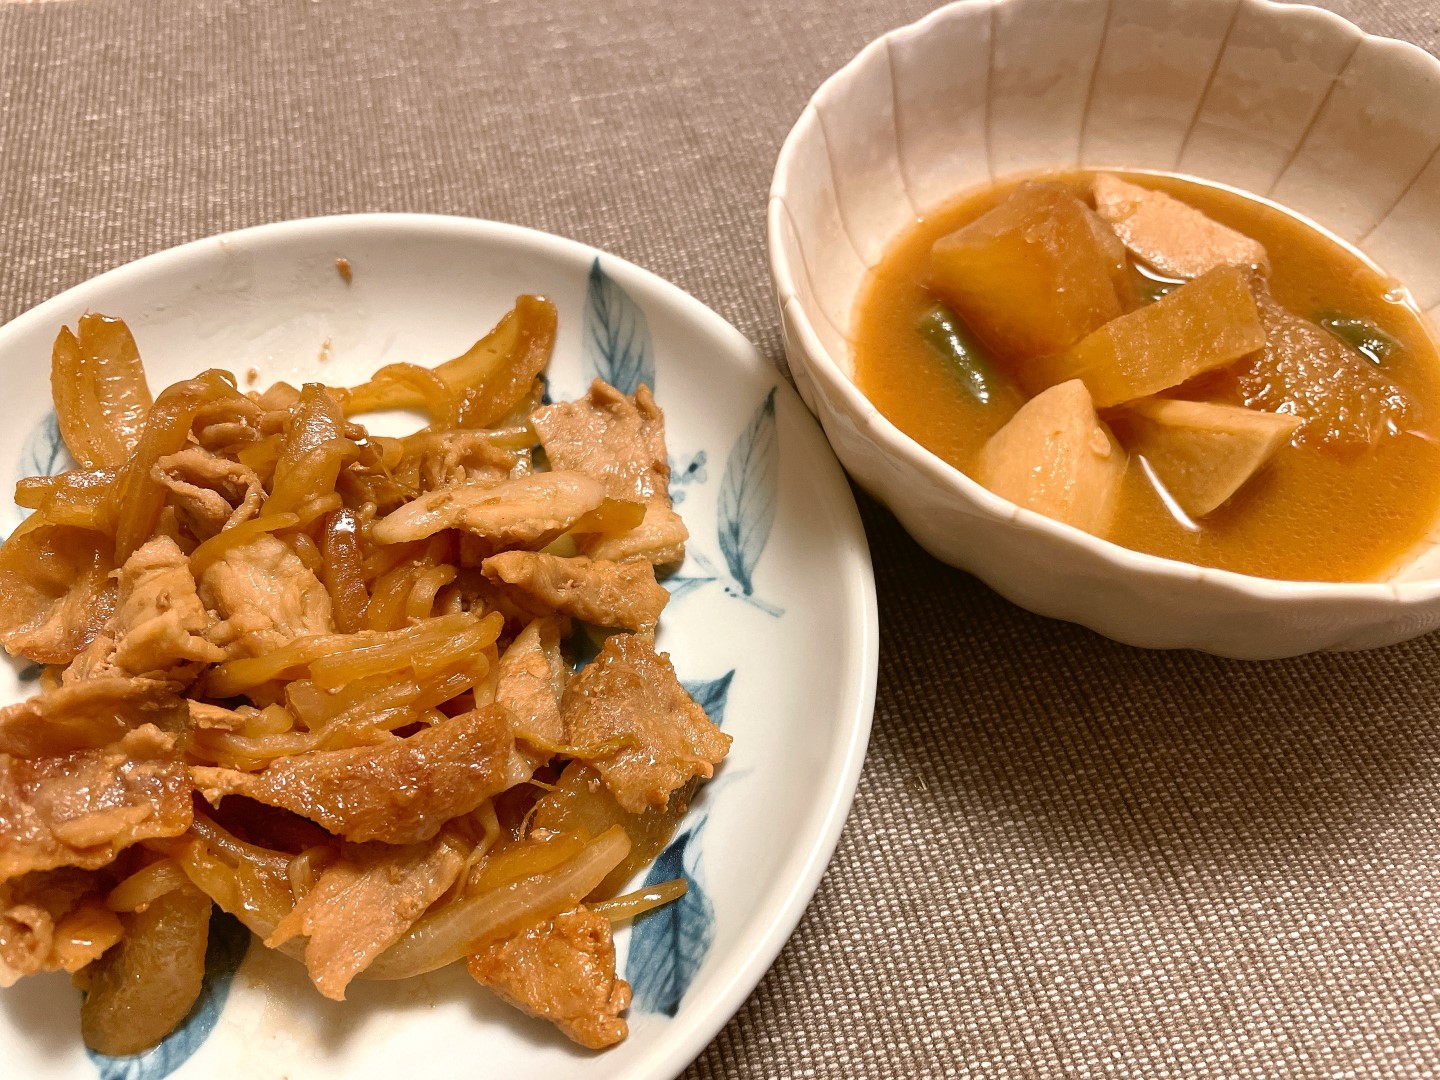 豚肉の生姜焼き
大根と里芋の味噌煮